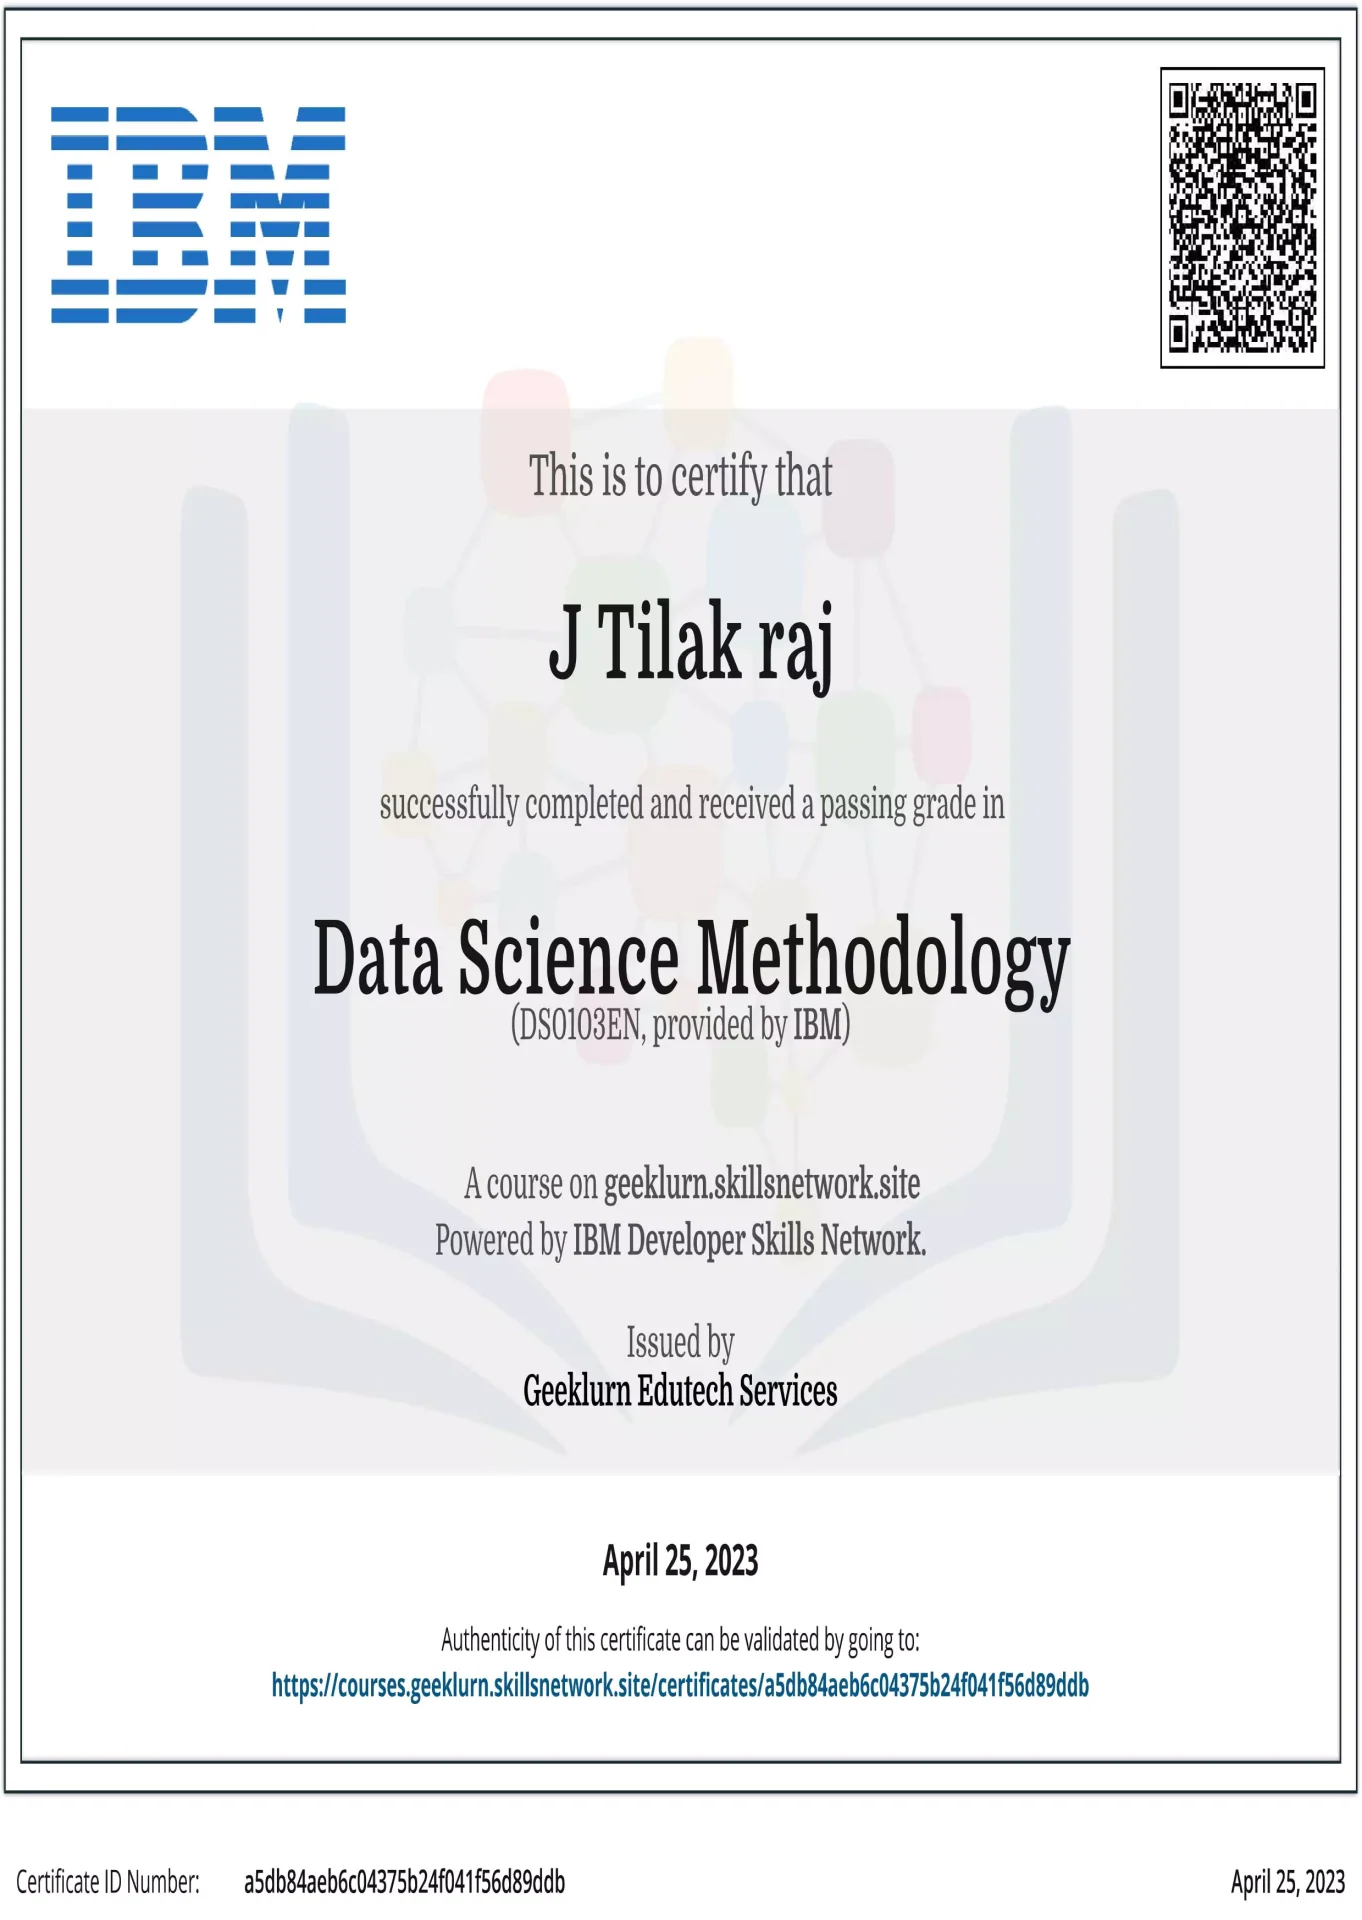 data-science-methodology-101-cer-from-ibm